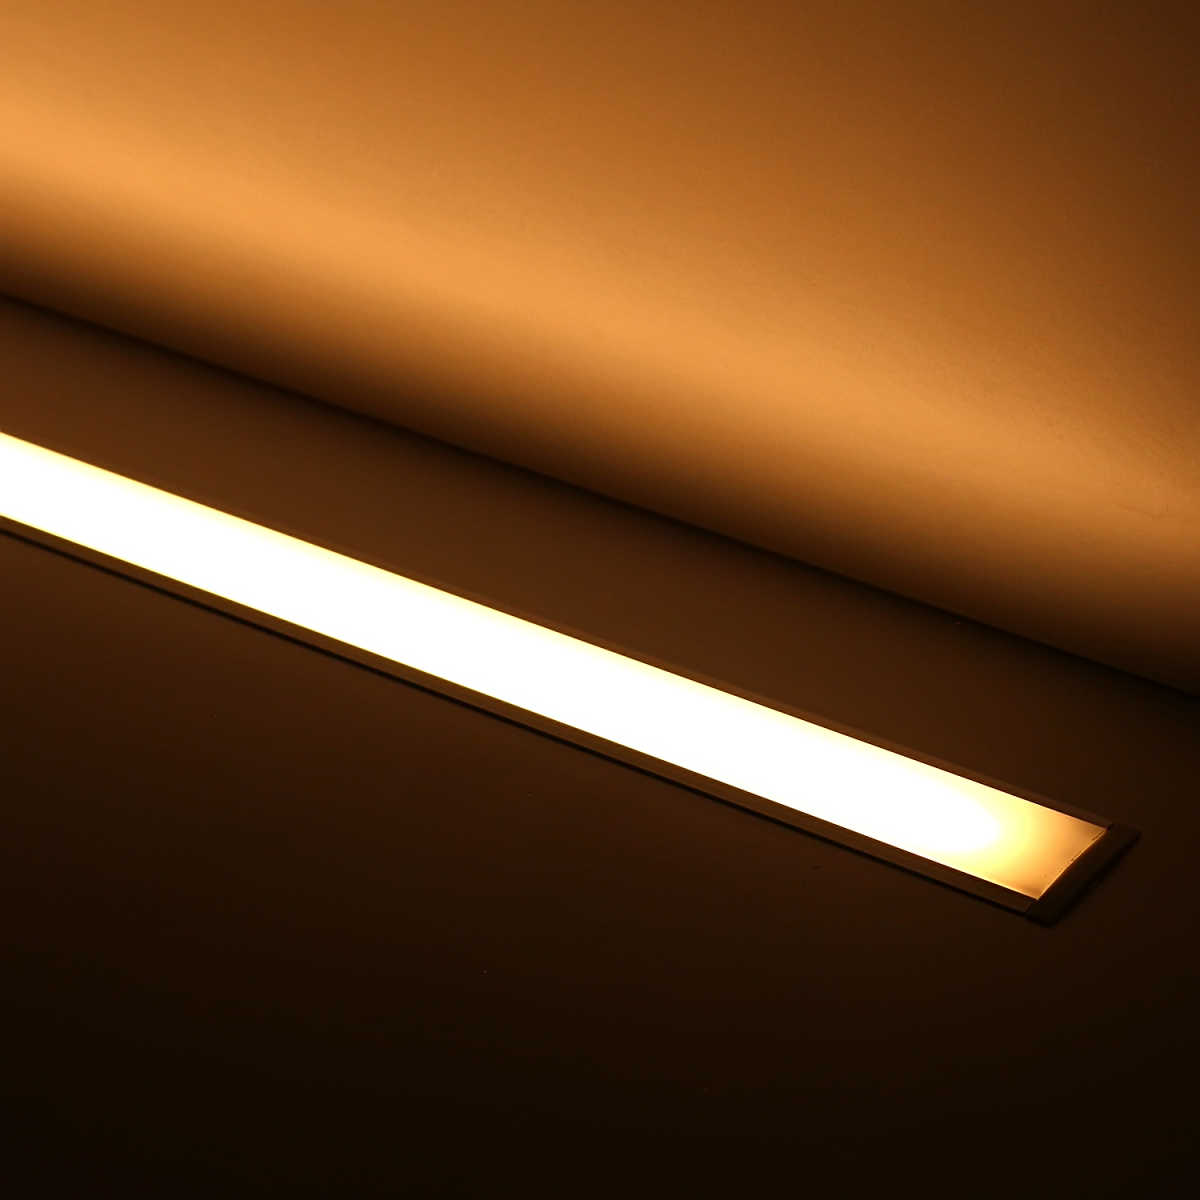 Einbau LED Lichtleiste "Inside max" diffus | mit 24V High-Performance LED-Streifen 240x 2835 LEDs 19W/m 2878 lm/m | warmweiß 2700K |